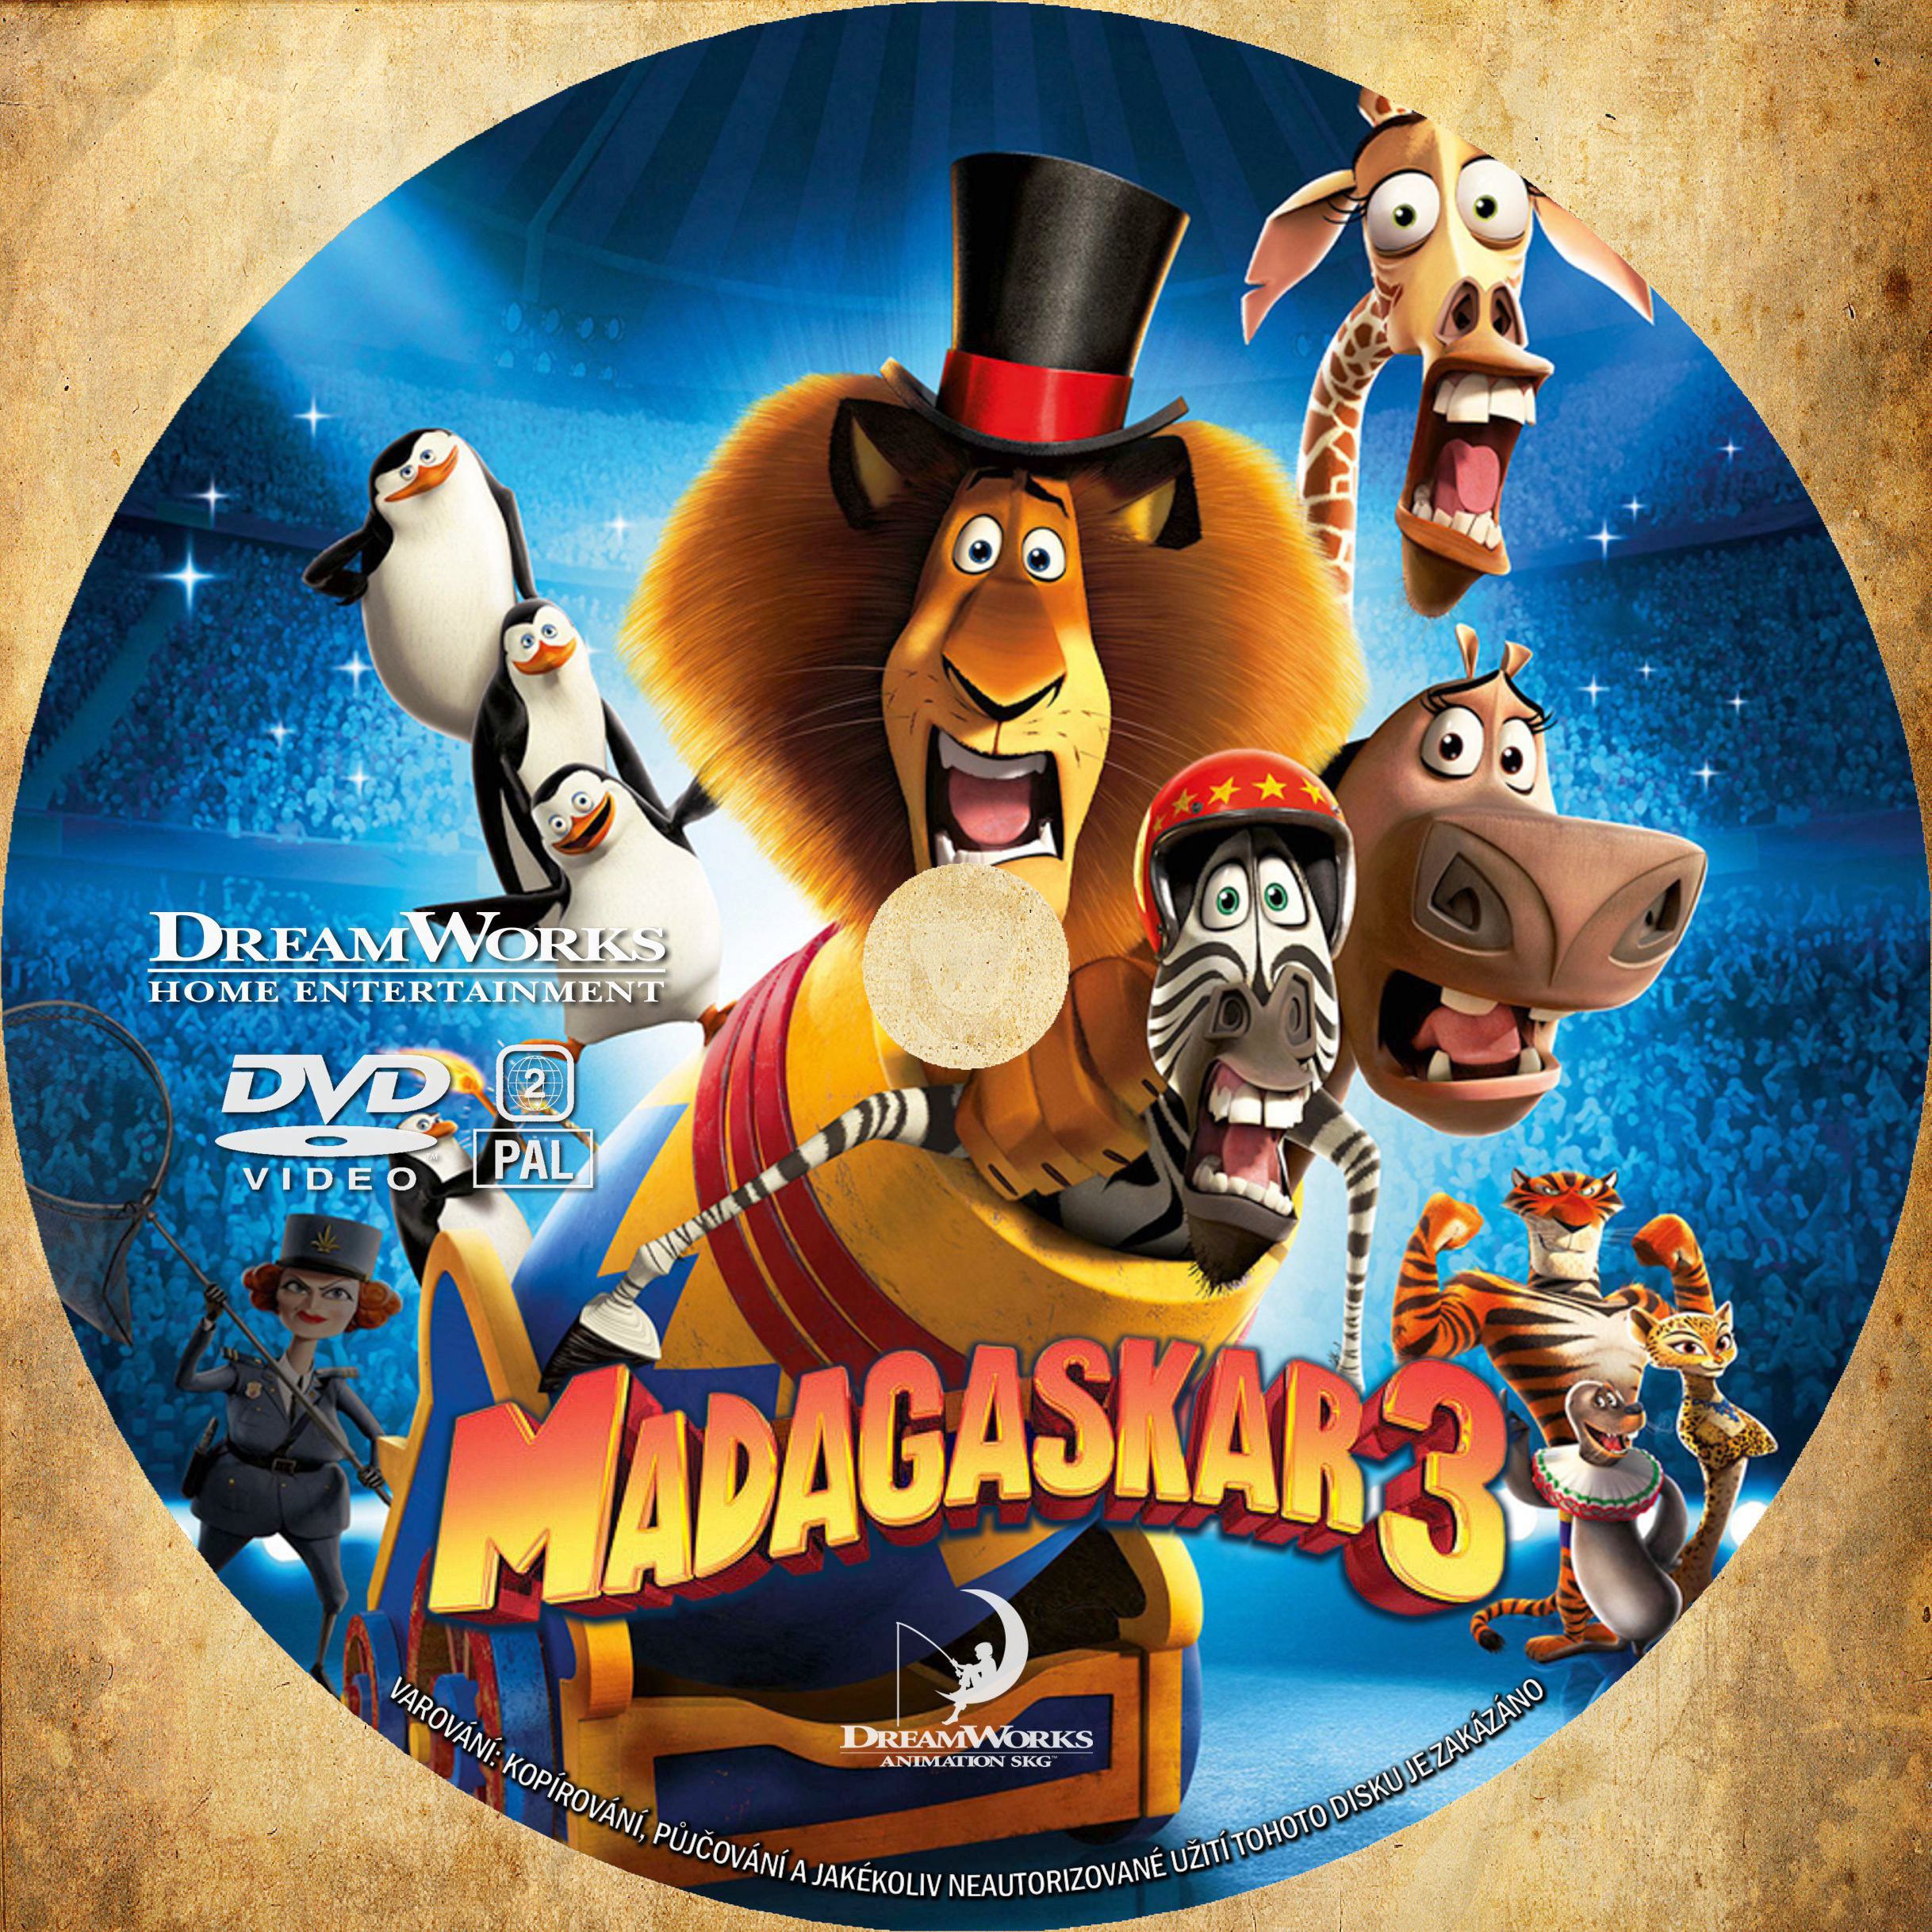 Мадагаскар кинотеатр расписание сеансов на сегодня